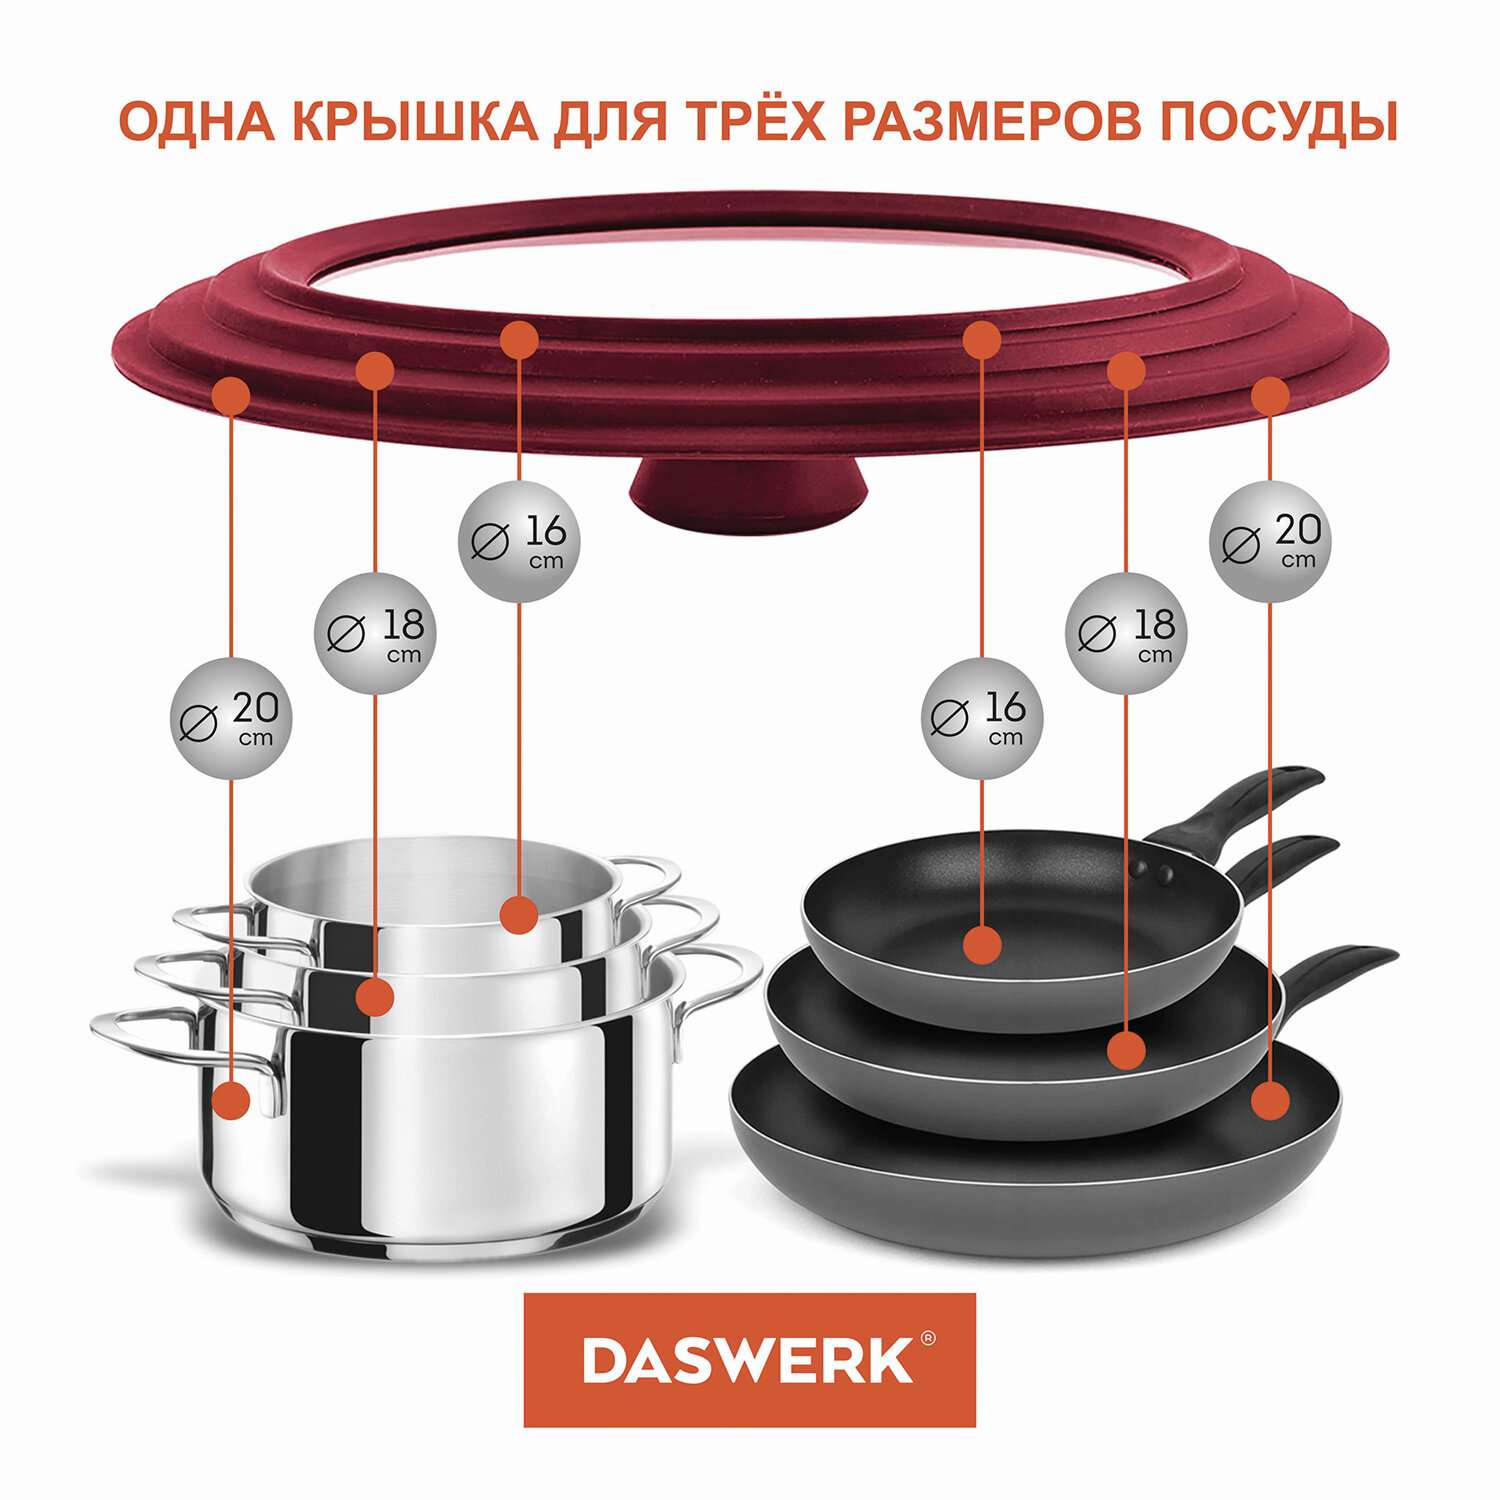 Крышка для сковороды DASWERK кастрюли посуды универсальная 3 размера 16-18-20см - фото 5